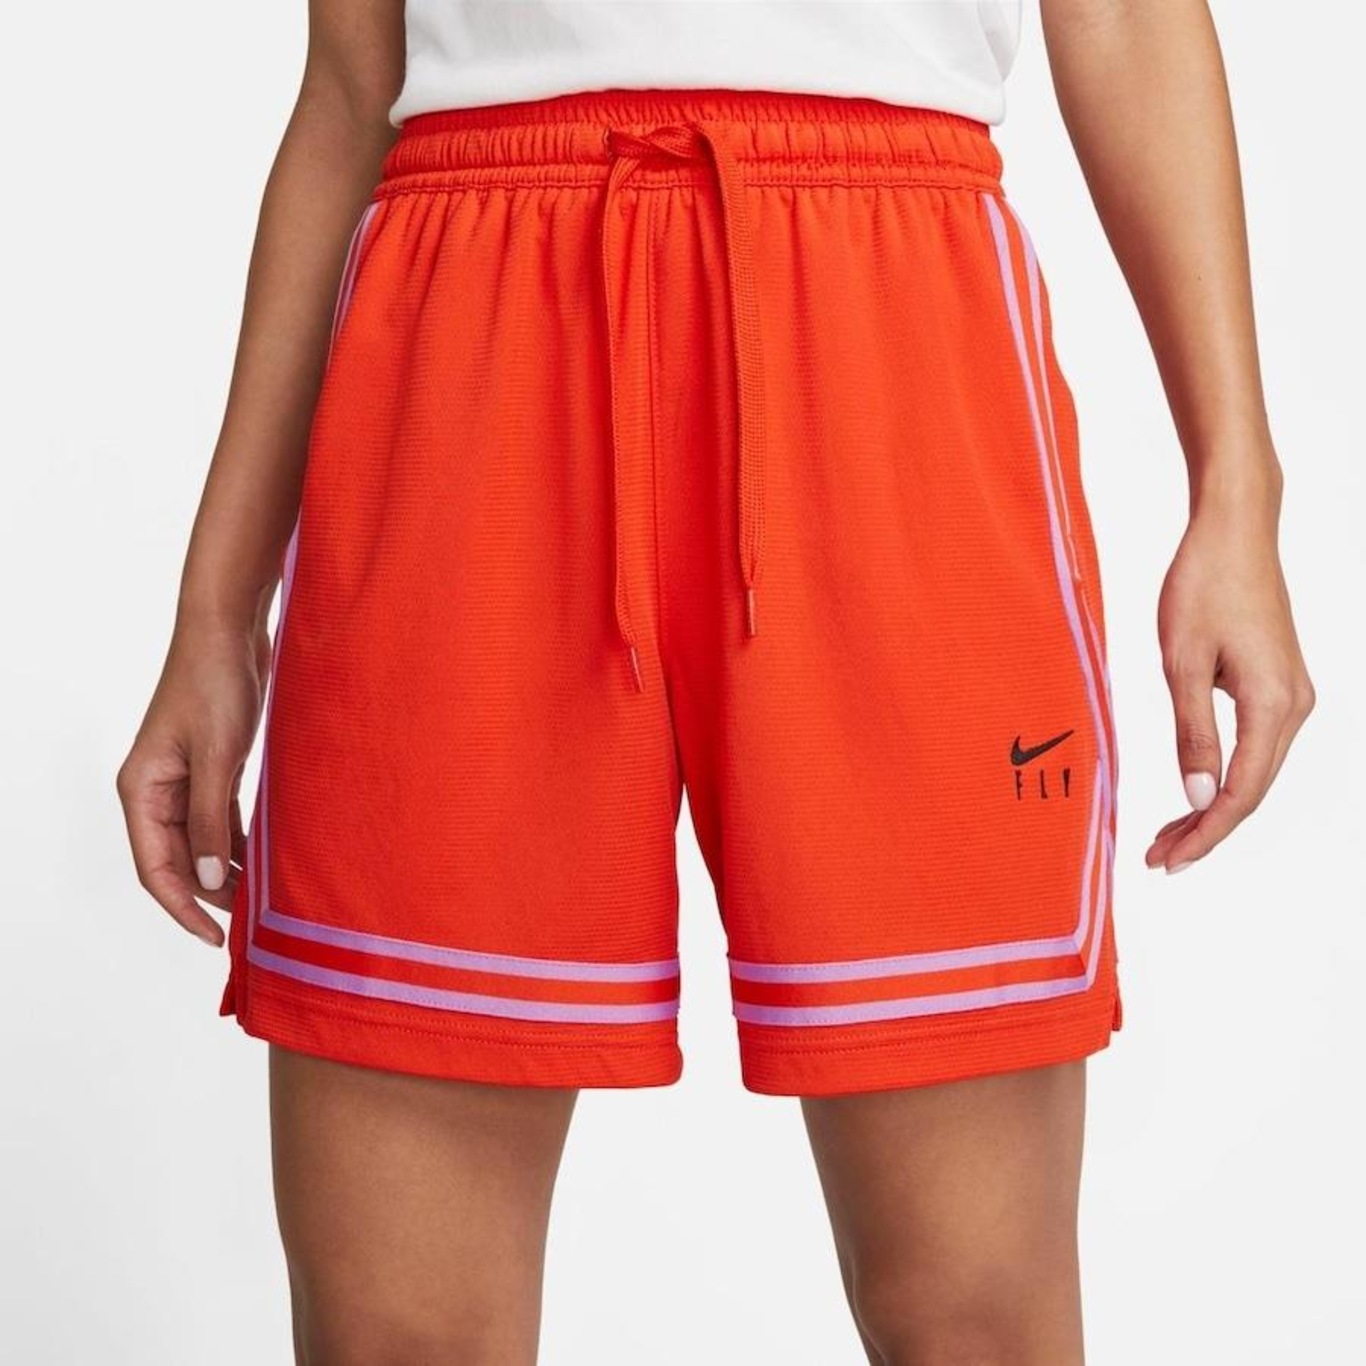 Nike Swoosh Fly, a coleção de roupas de basquete feita para mulheres